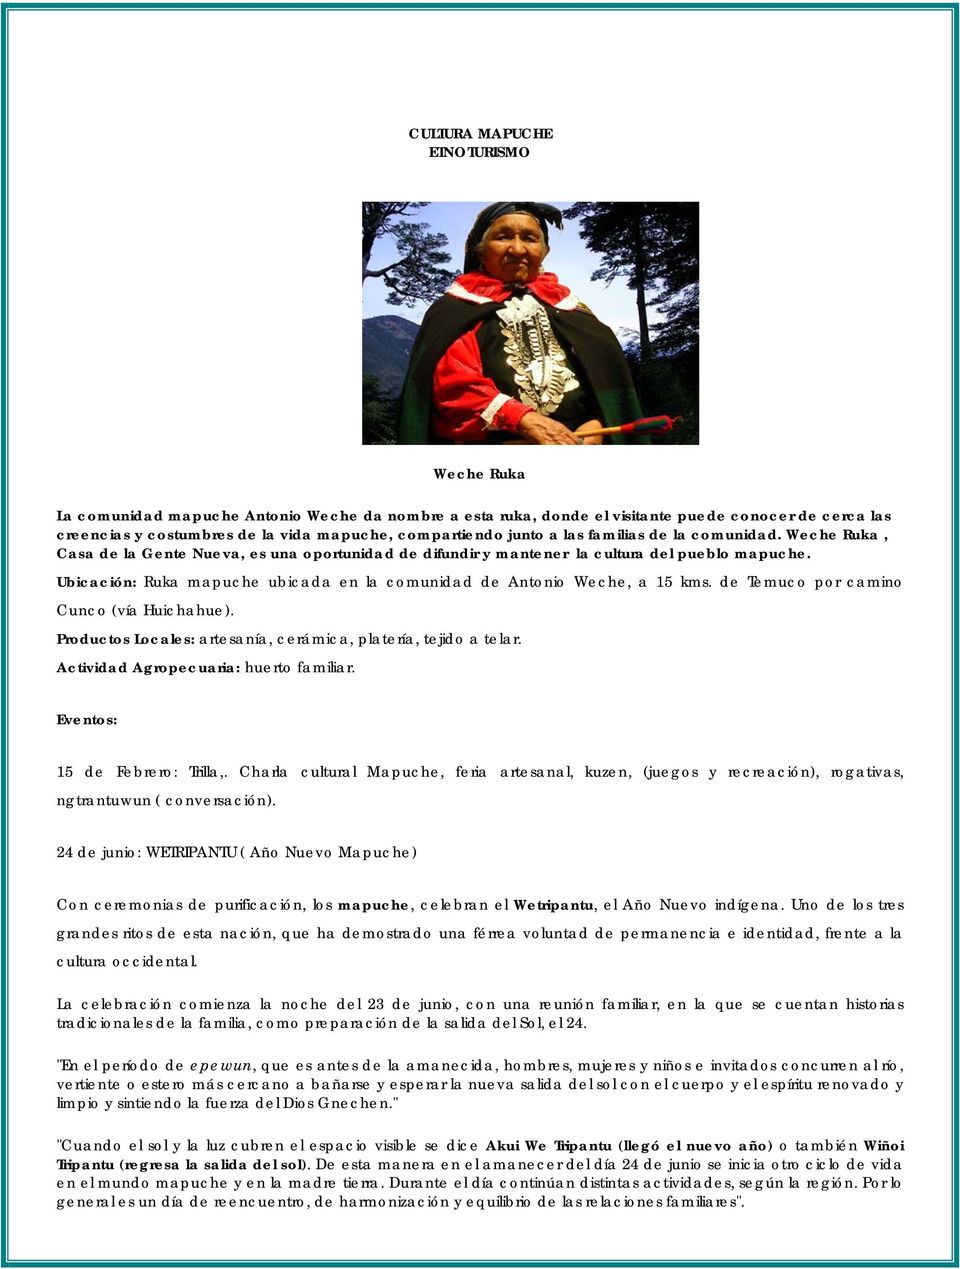 Ubicación: Ruka mapuche ubicada en la comunidad de Antonio Weche, a 15 kms. de Temuco por camino Cunco (vía Huichahue). Productos Locales: artesanía, cerámica, platería, tejido a telar.